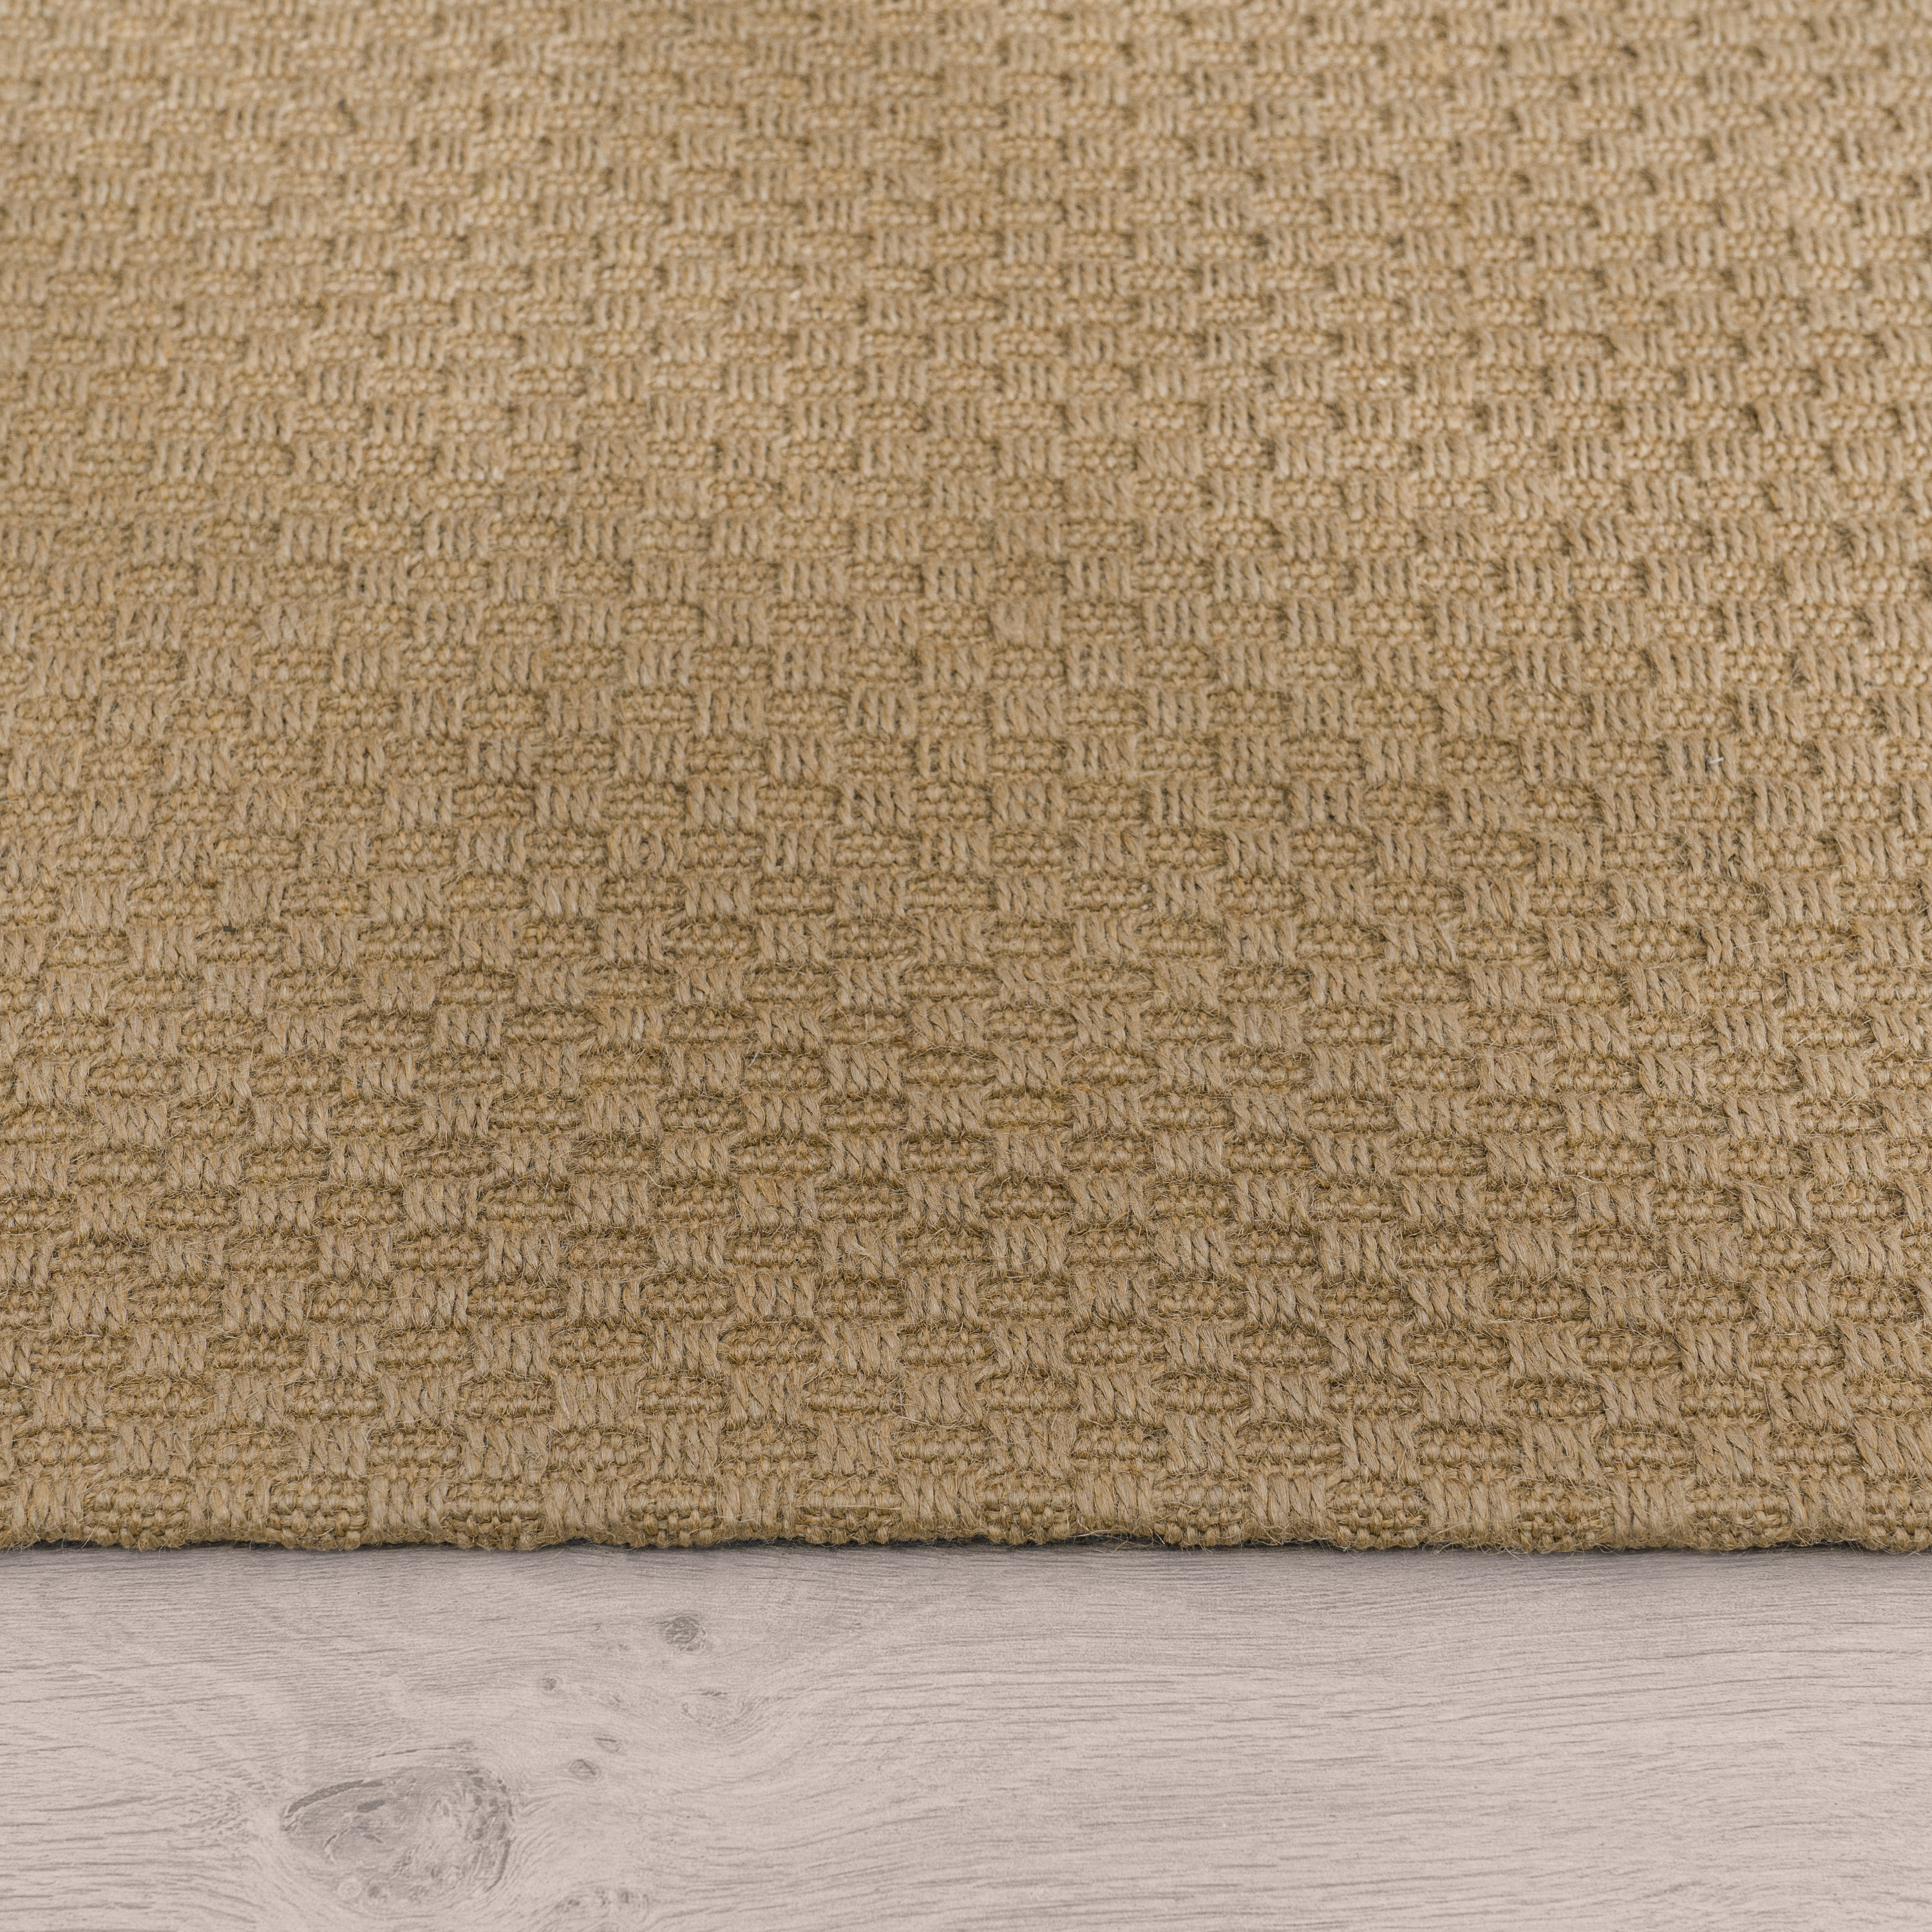 Teppich Esszimmer Jute Karo Muster Handgearbeitet Beige Uni